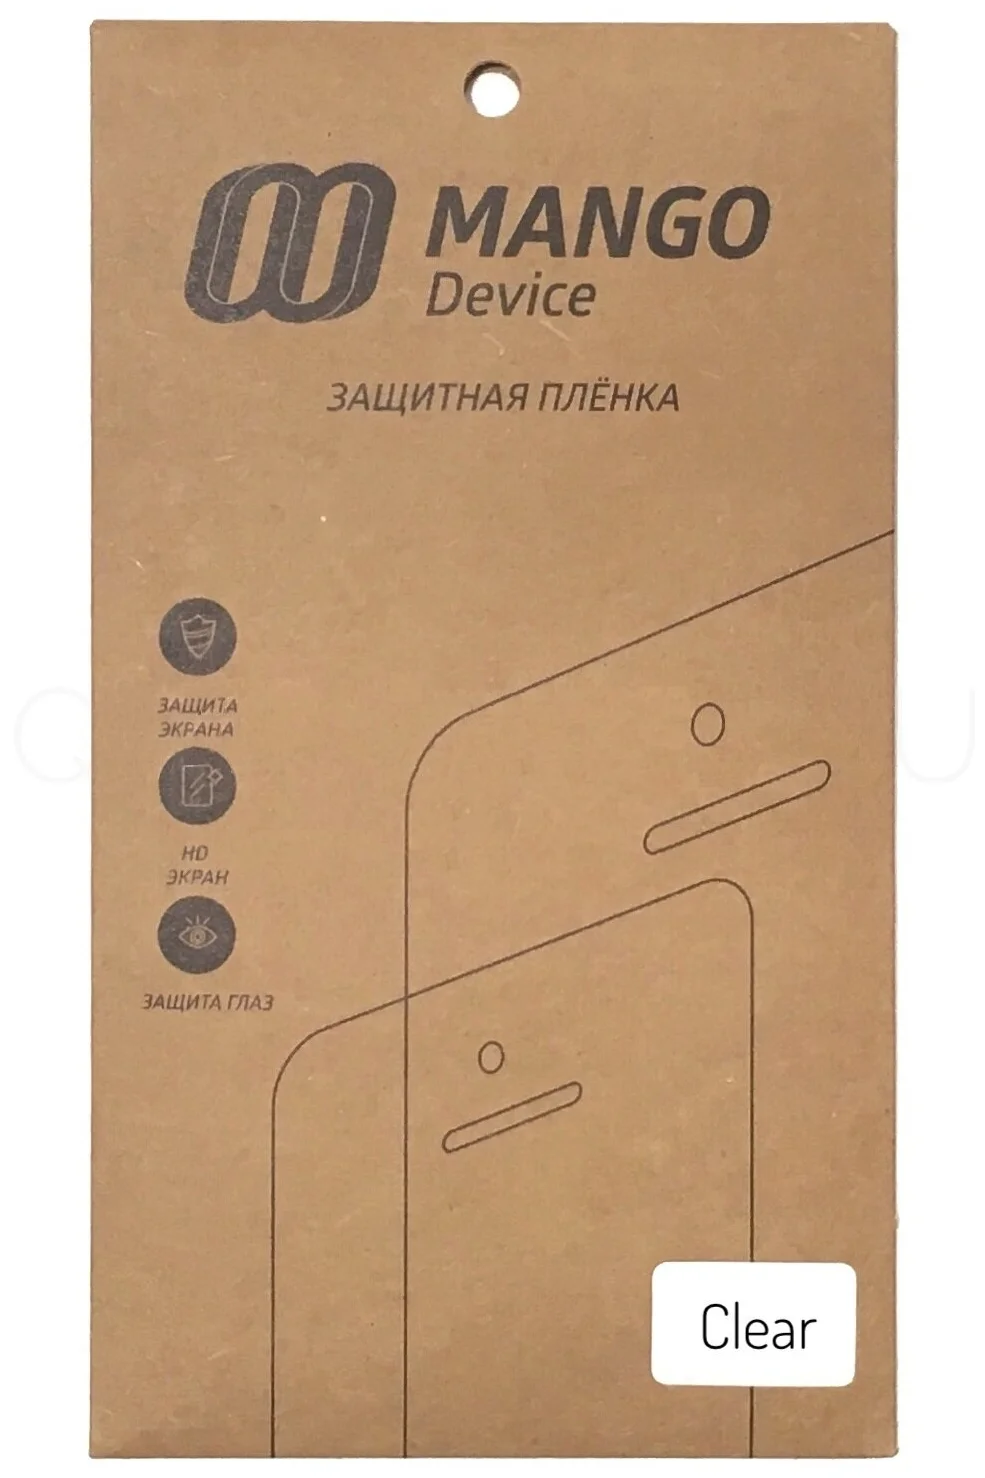 Защитная пленка Mango Device для LG G3, прозрачная